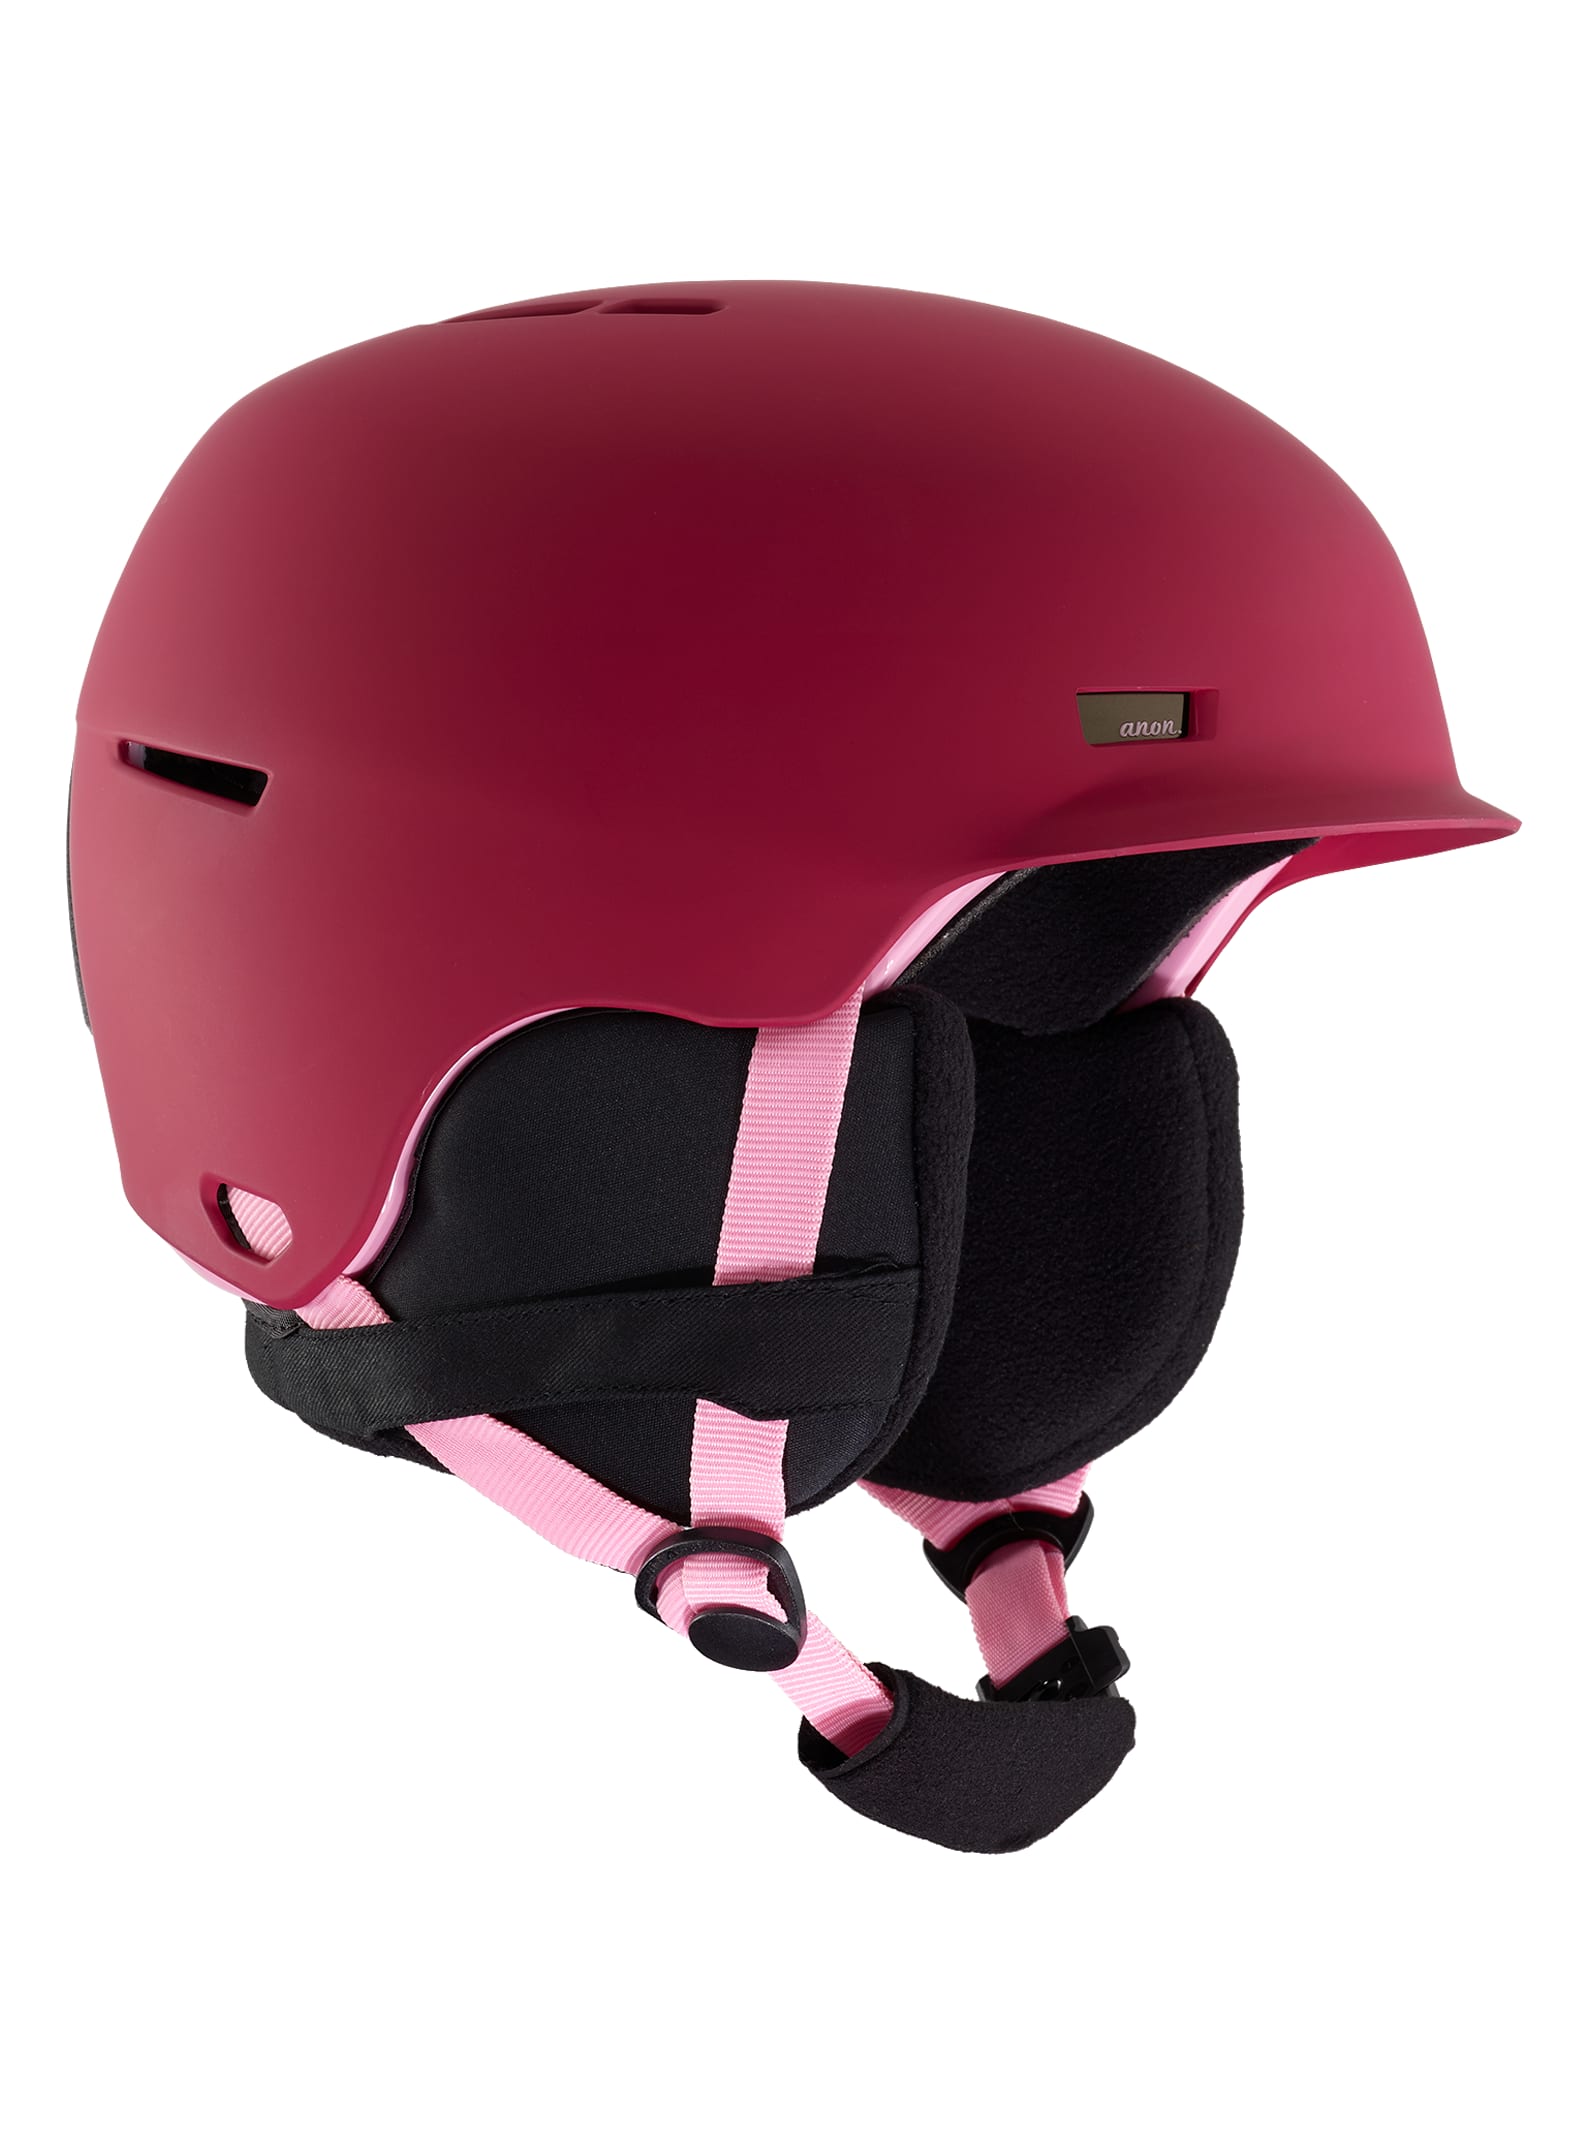 Burton / Kids' Anon Flash Helmet